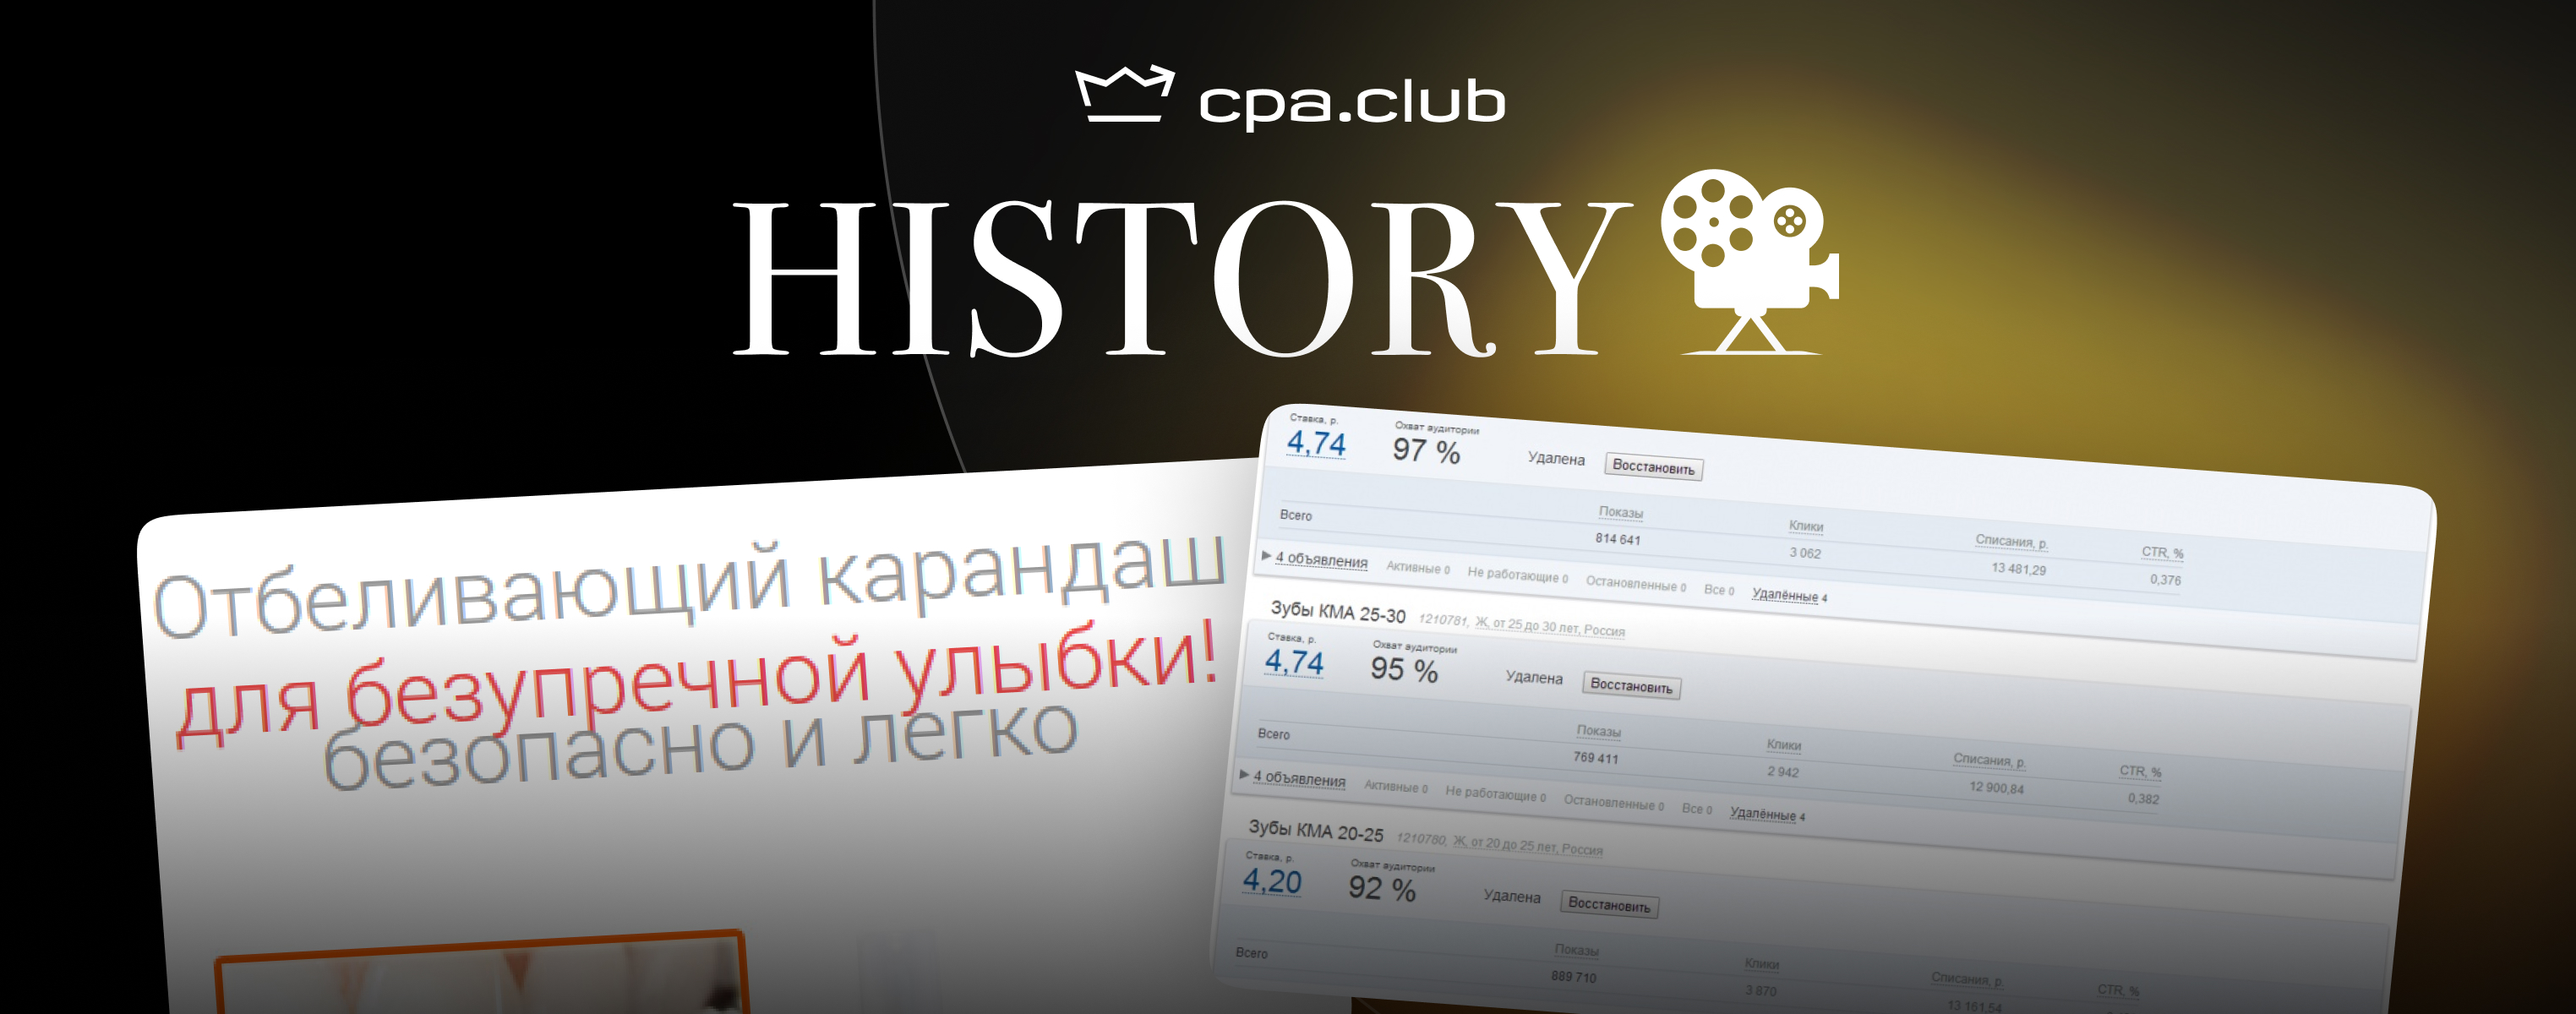 Cpa.Club History. 370к чистыми за день на Голливудской Улыбке.